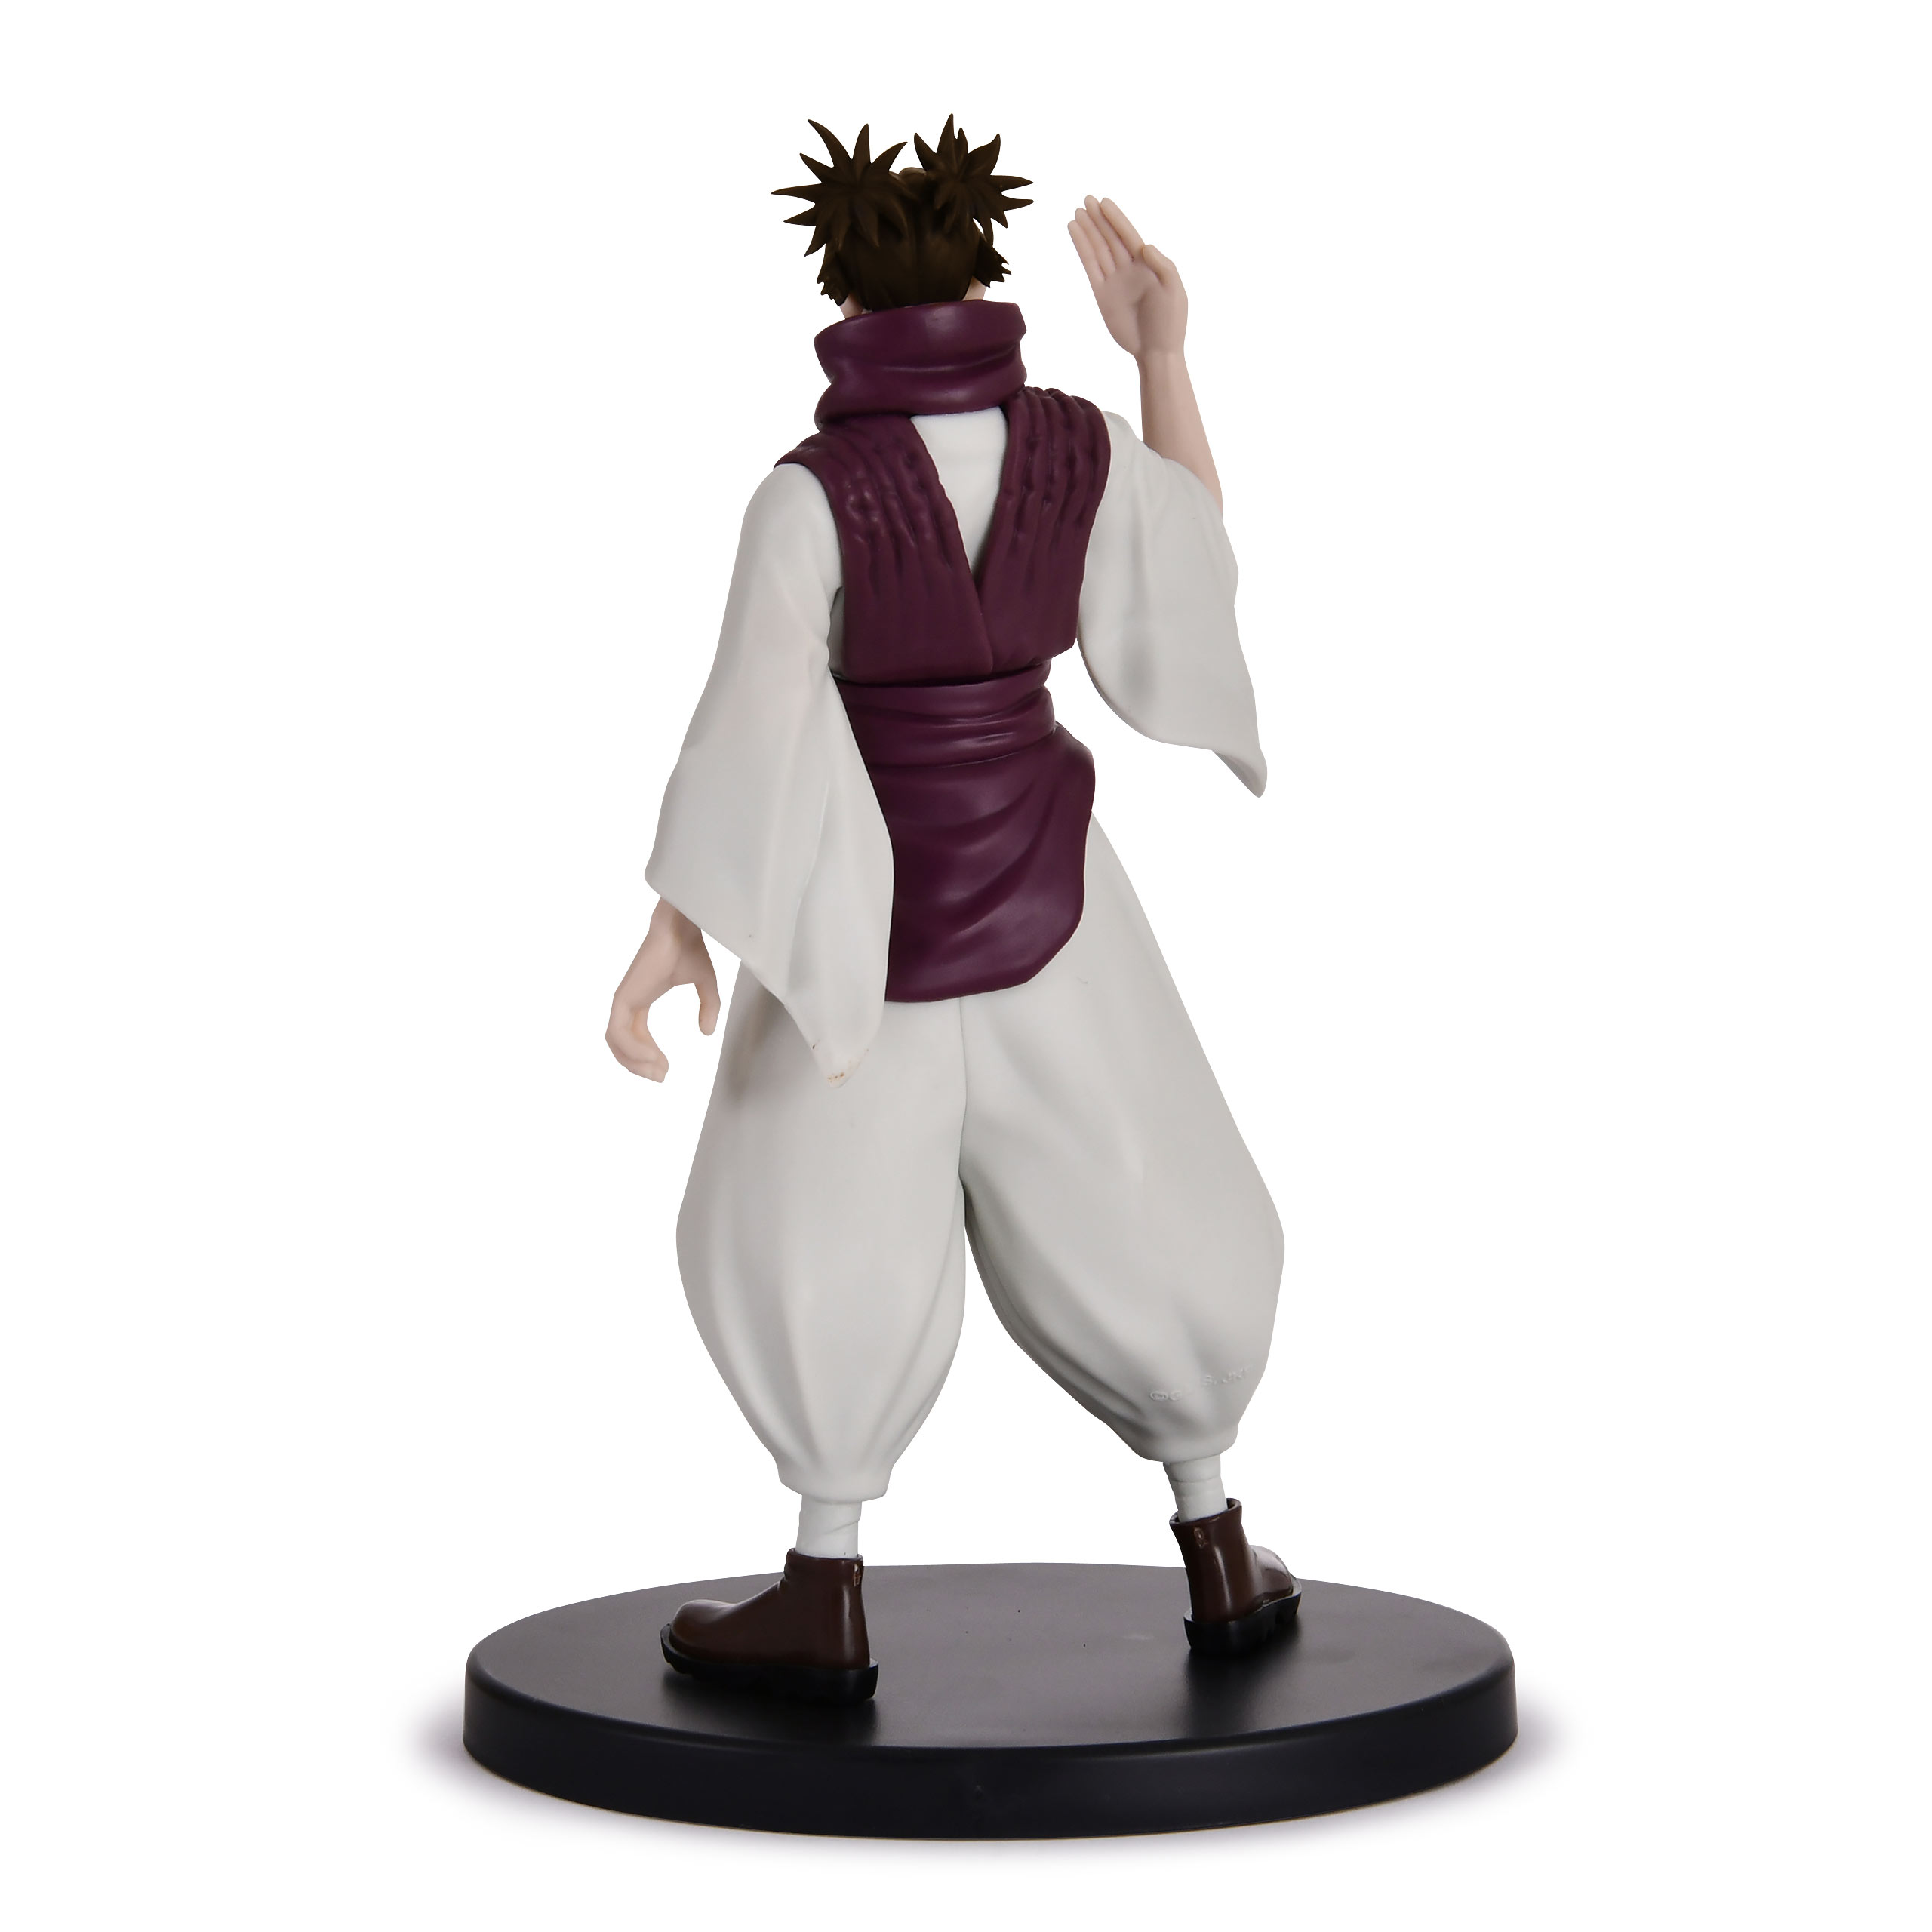 Jujutsu Kaisen - Figurine Choso